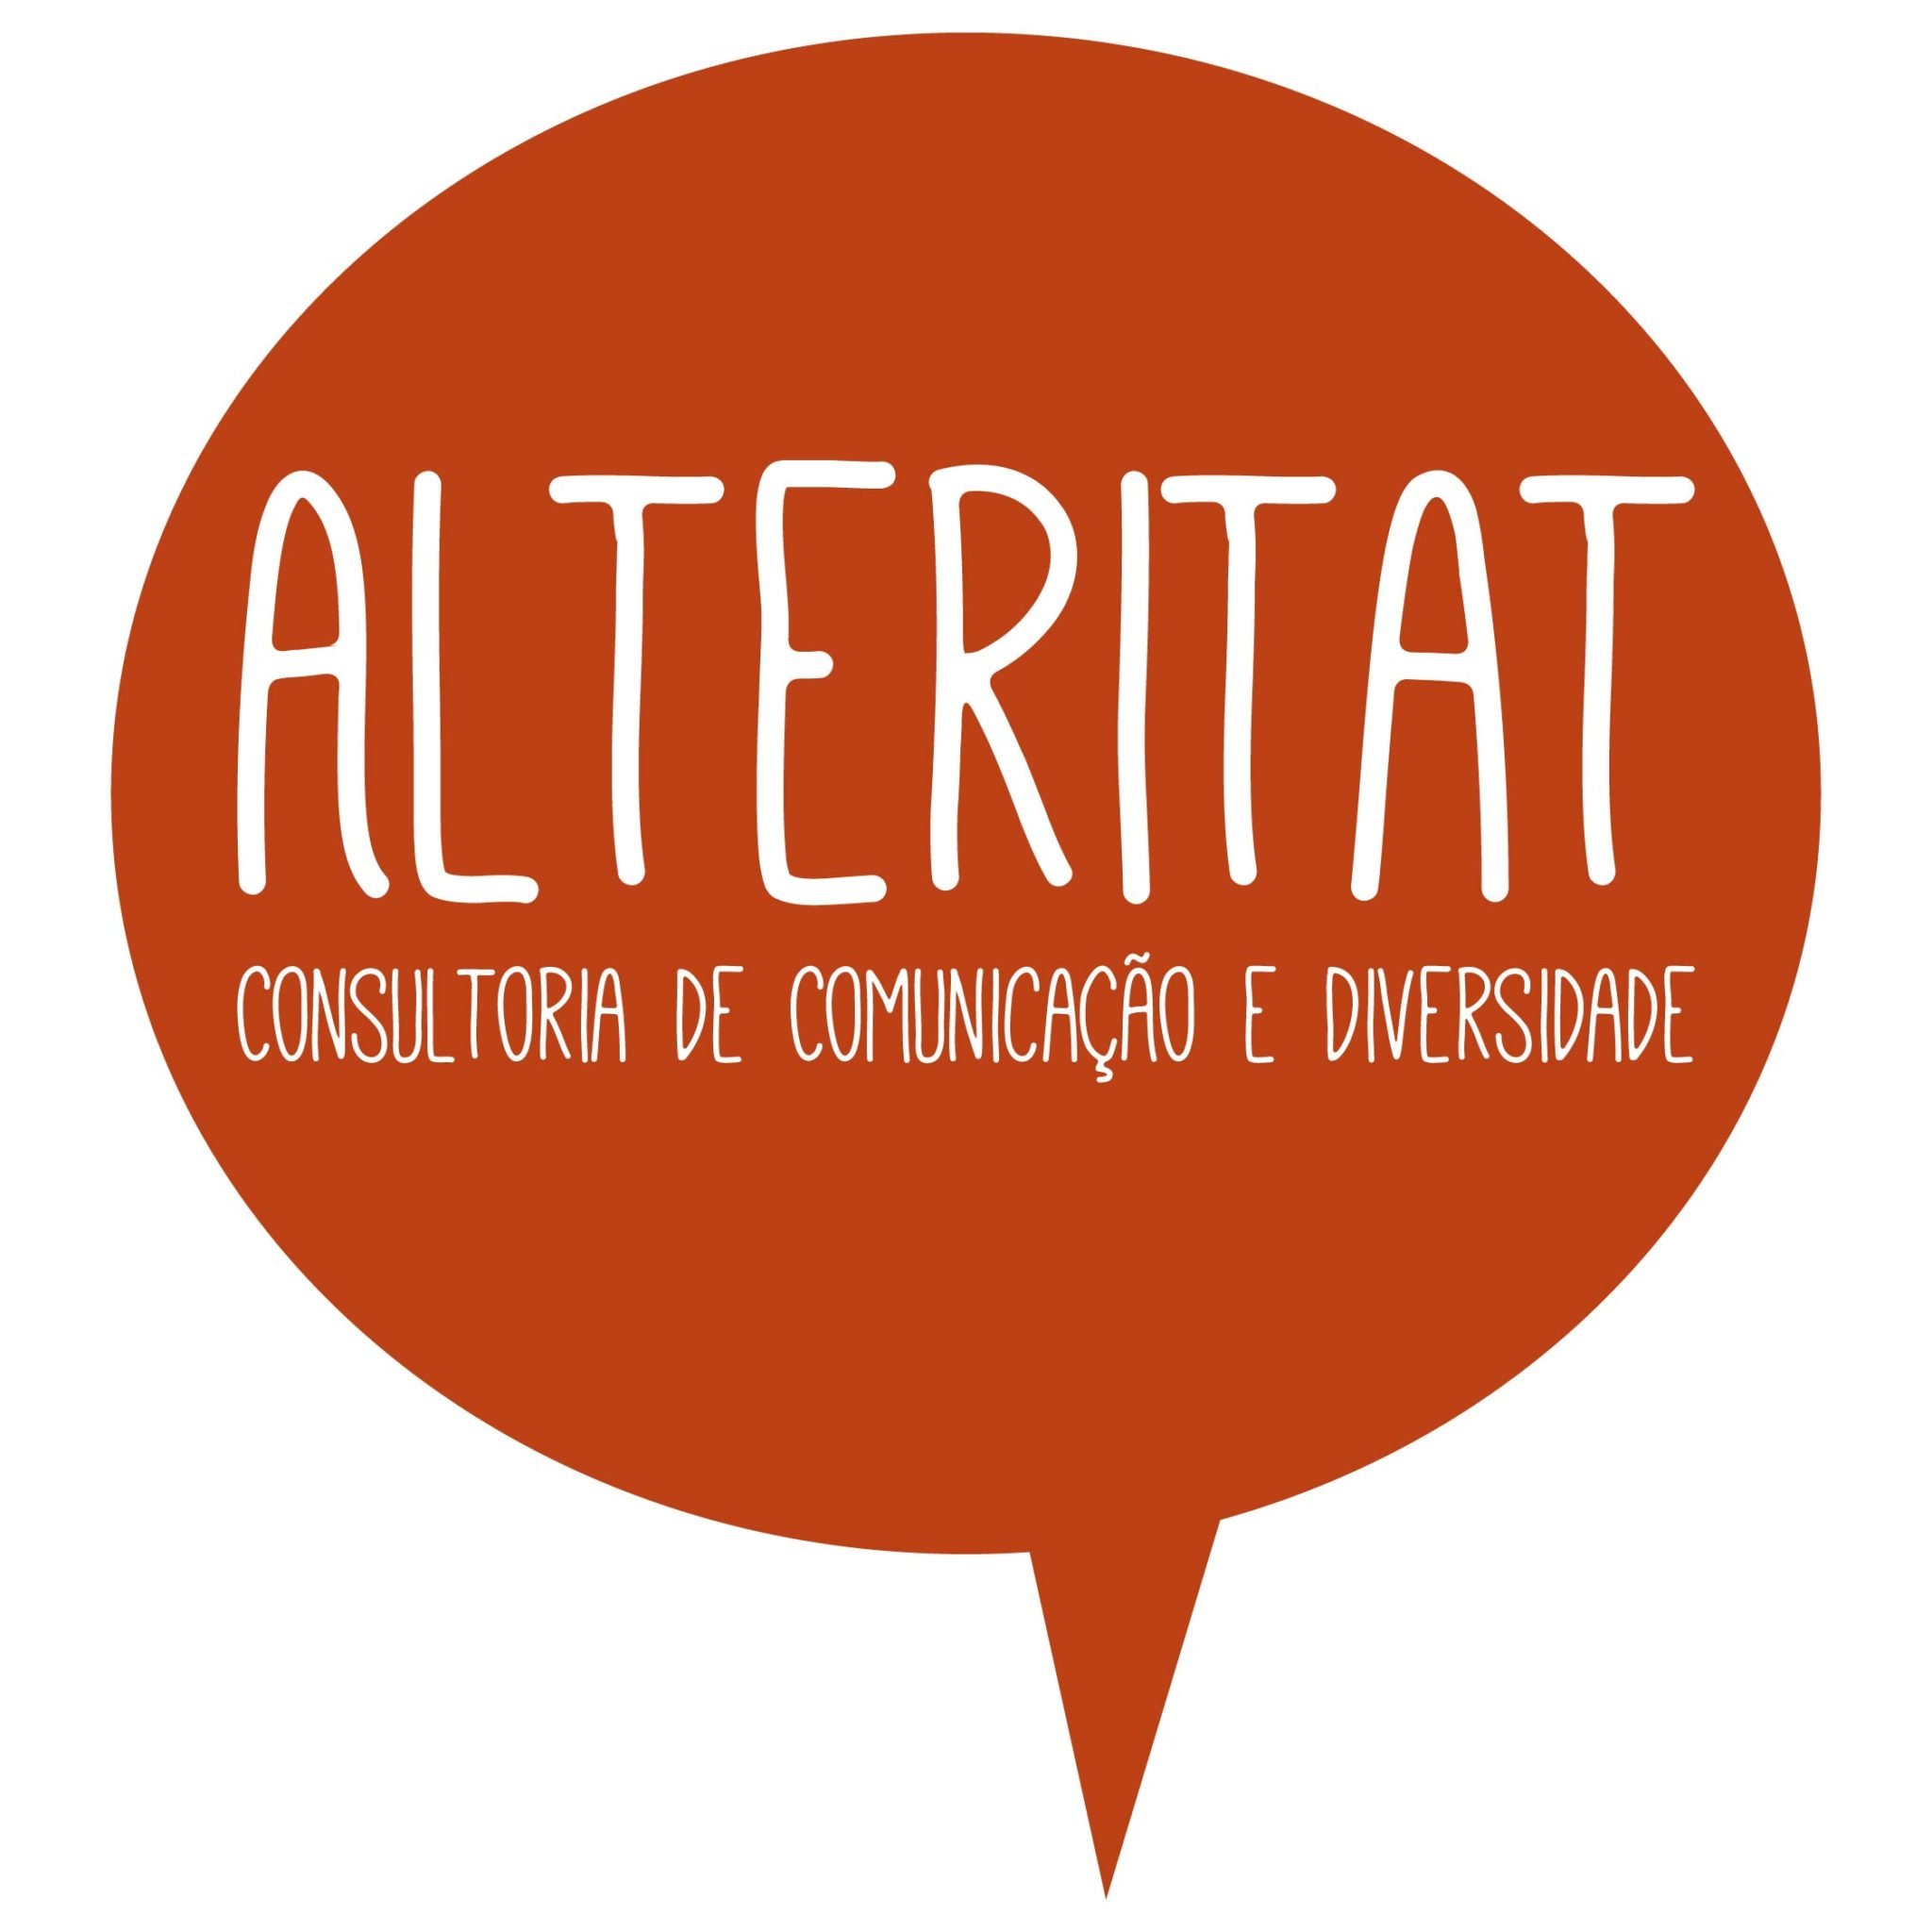 Picture of Alteritat Consultoria de Comunicação e Diversidade